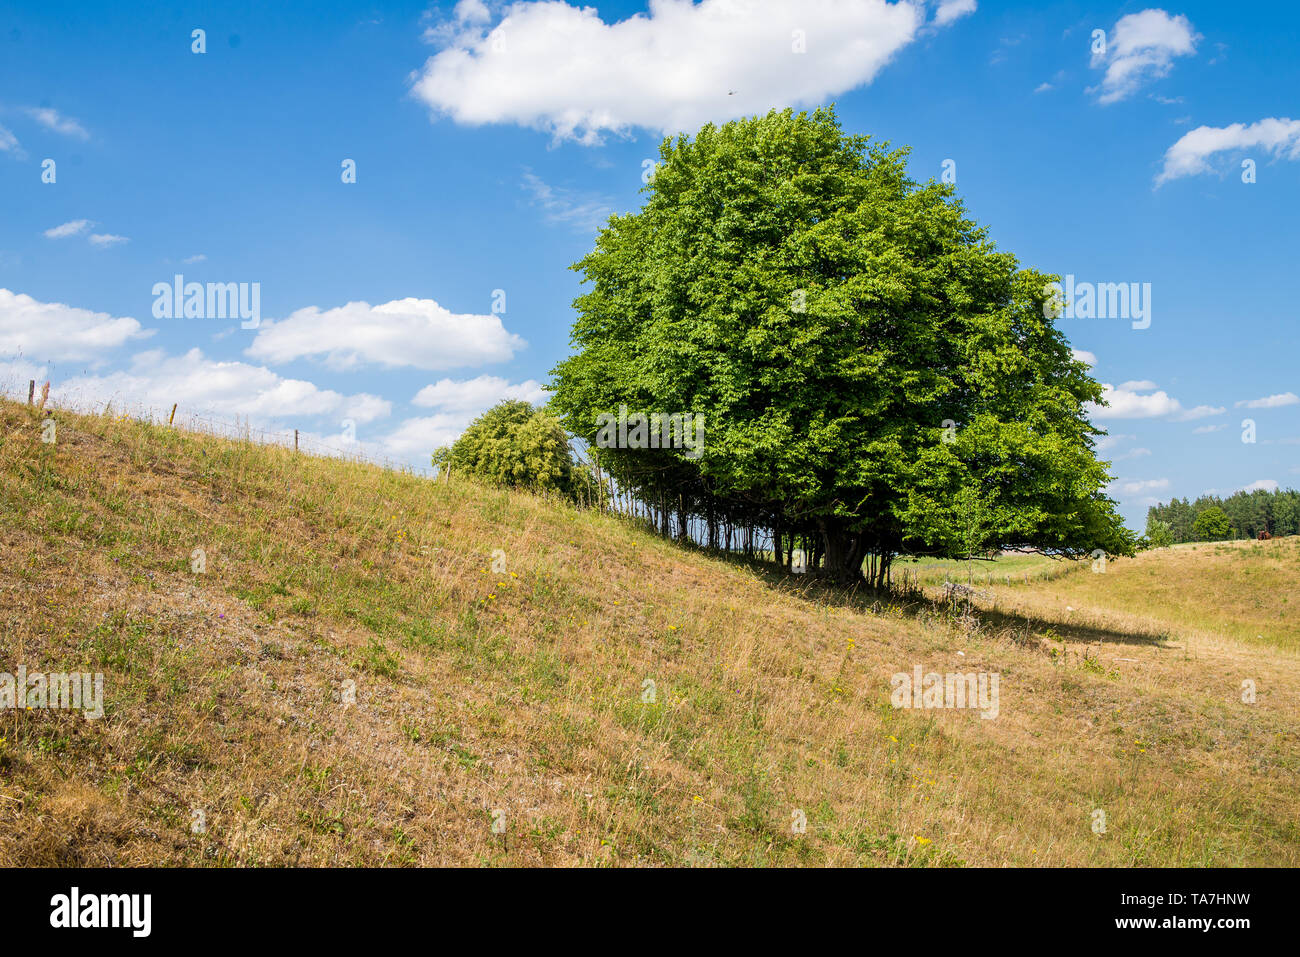 Ein großer grüner Baum in der Mitte einer hügeligen Gebiet, mit einem blauen Himmel im Hintergrund Stockfoto